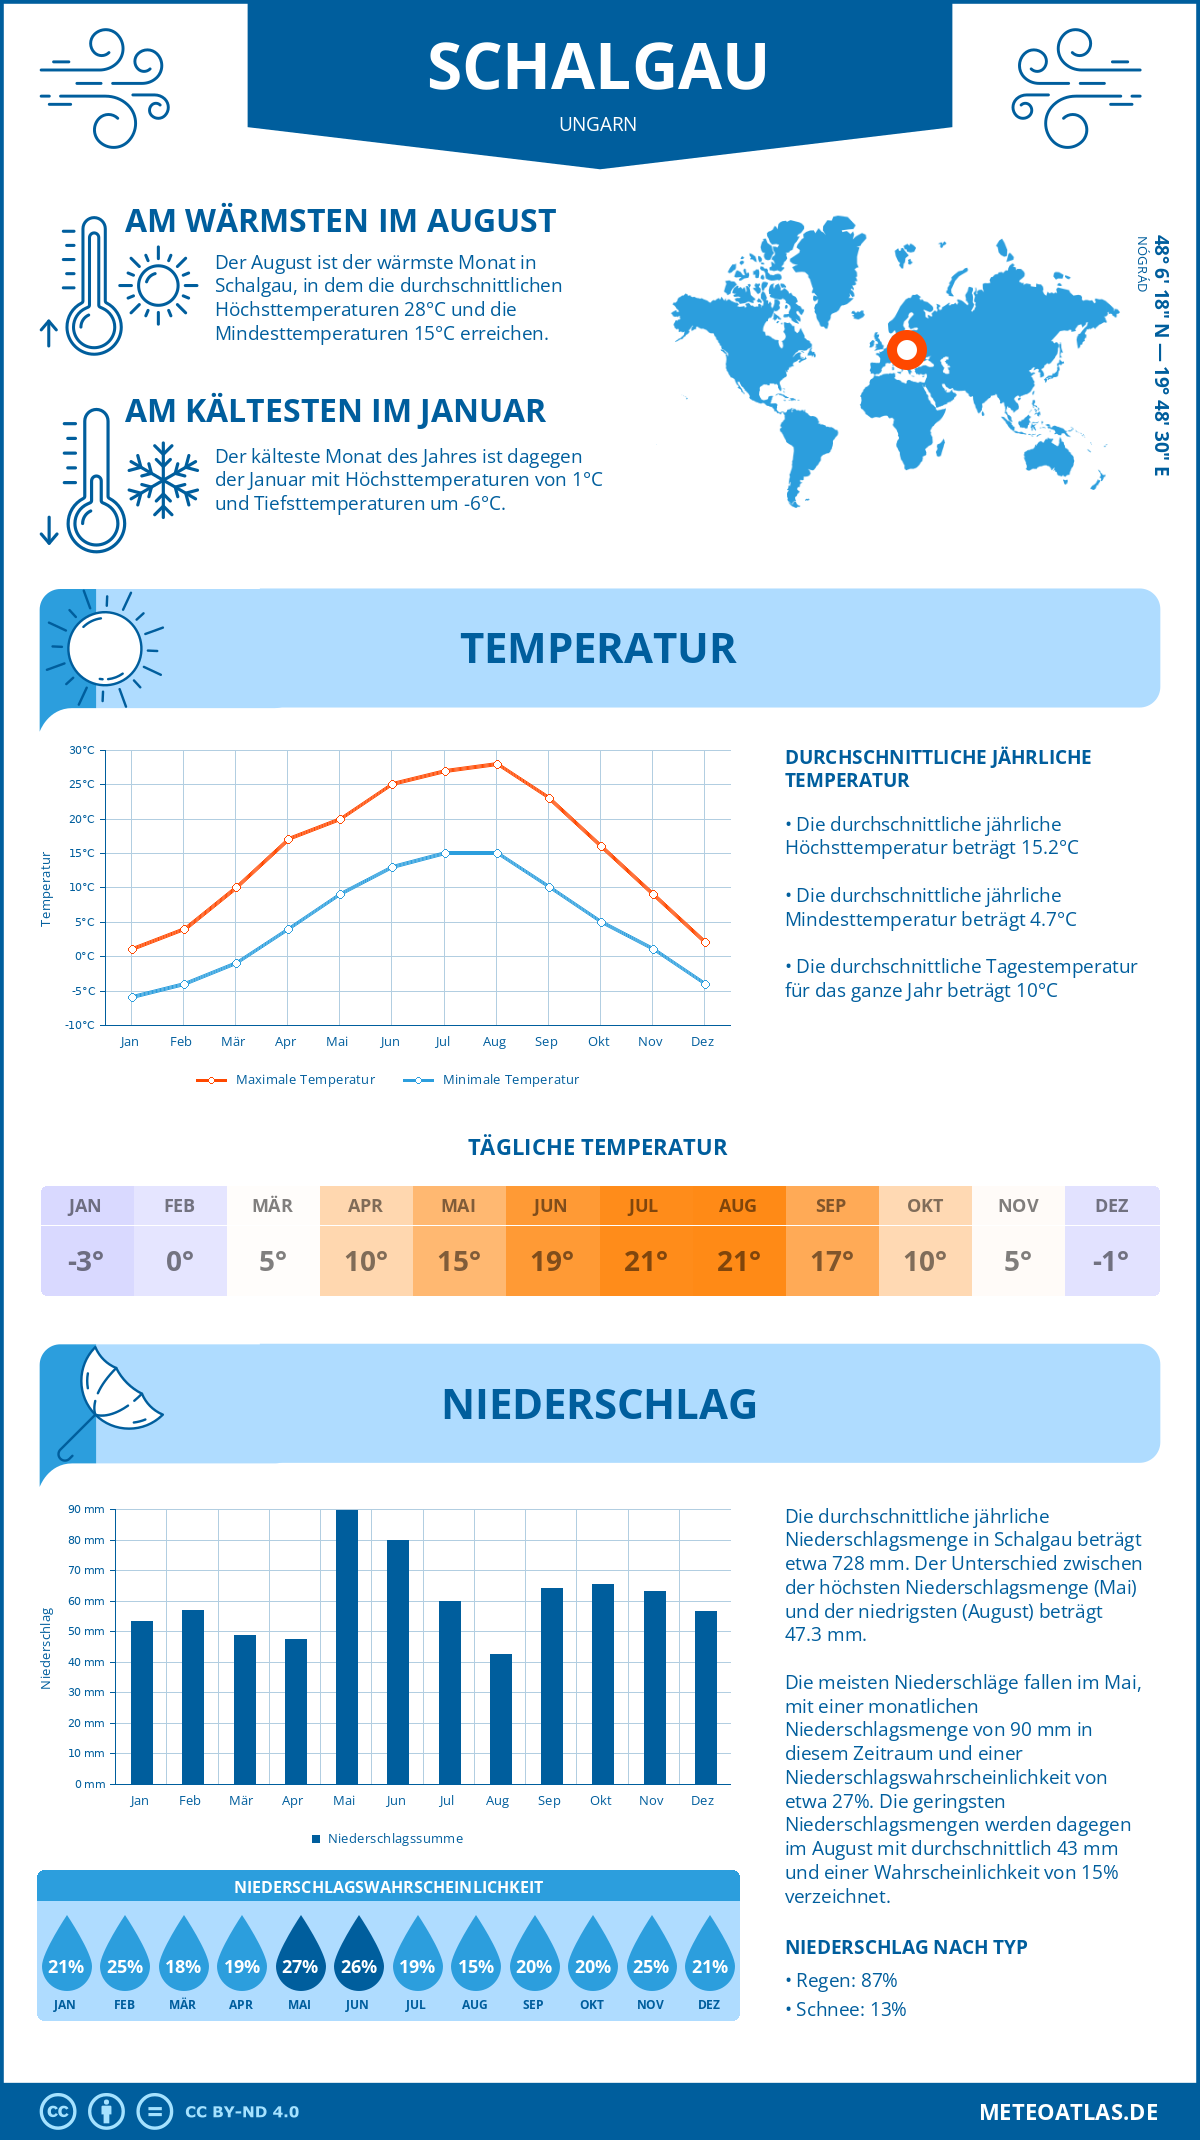 Wetter Schalgau (Ungarn) - Temperatur und Niederschlag